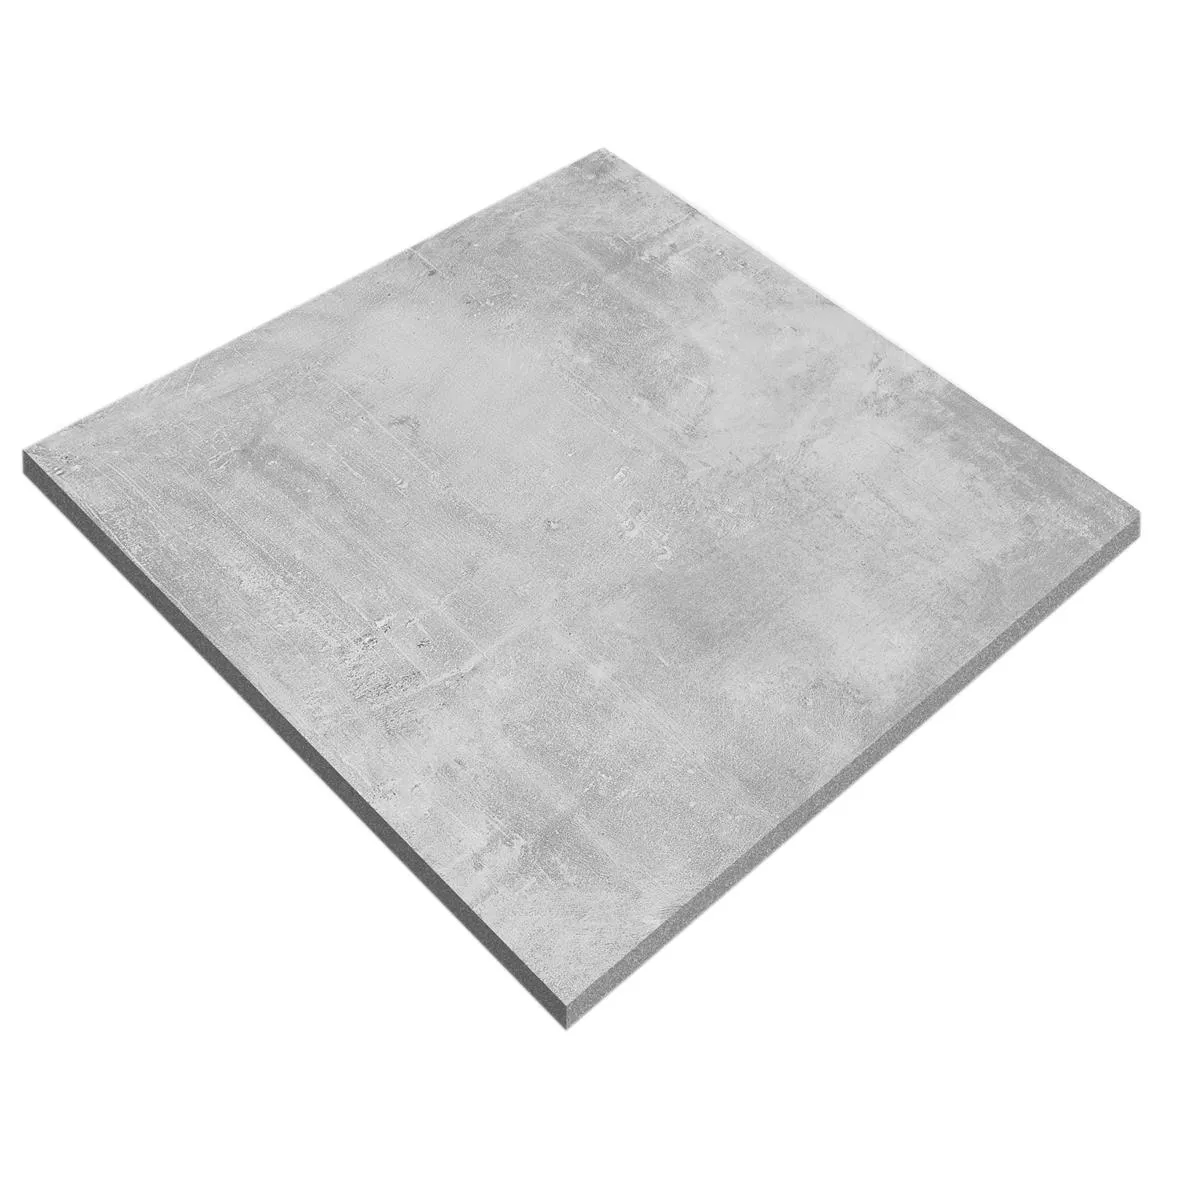 Sample Terrace Tiles Beton Optic Sunfield Grey 60x60cm